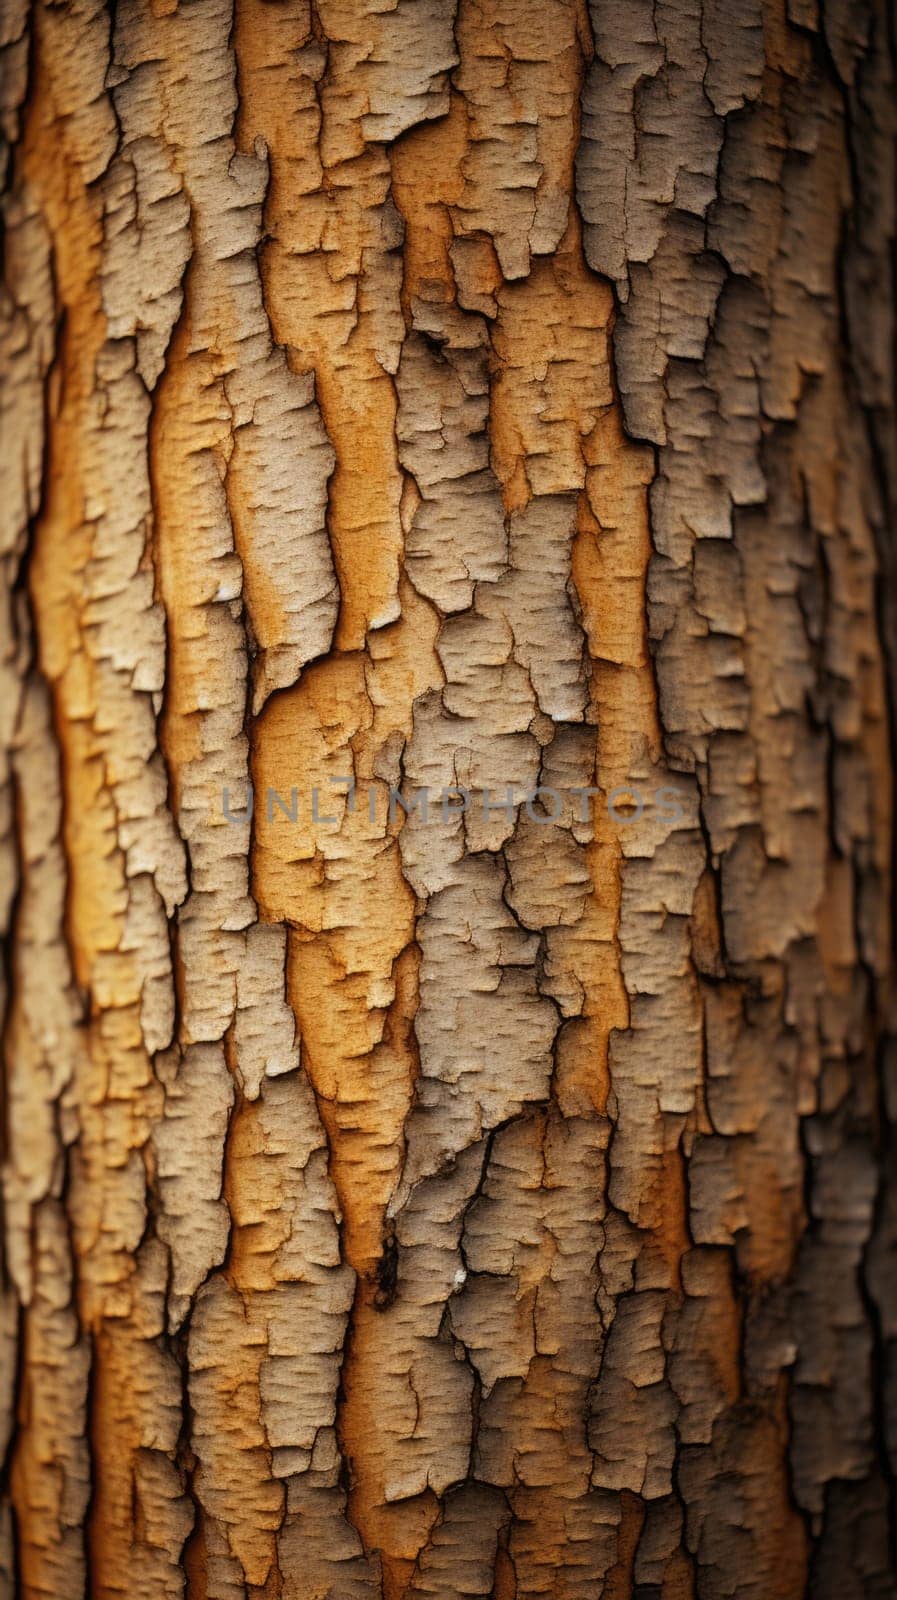 A close up of a tree with a crack in it, AI by starush